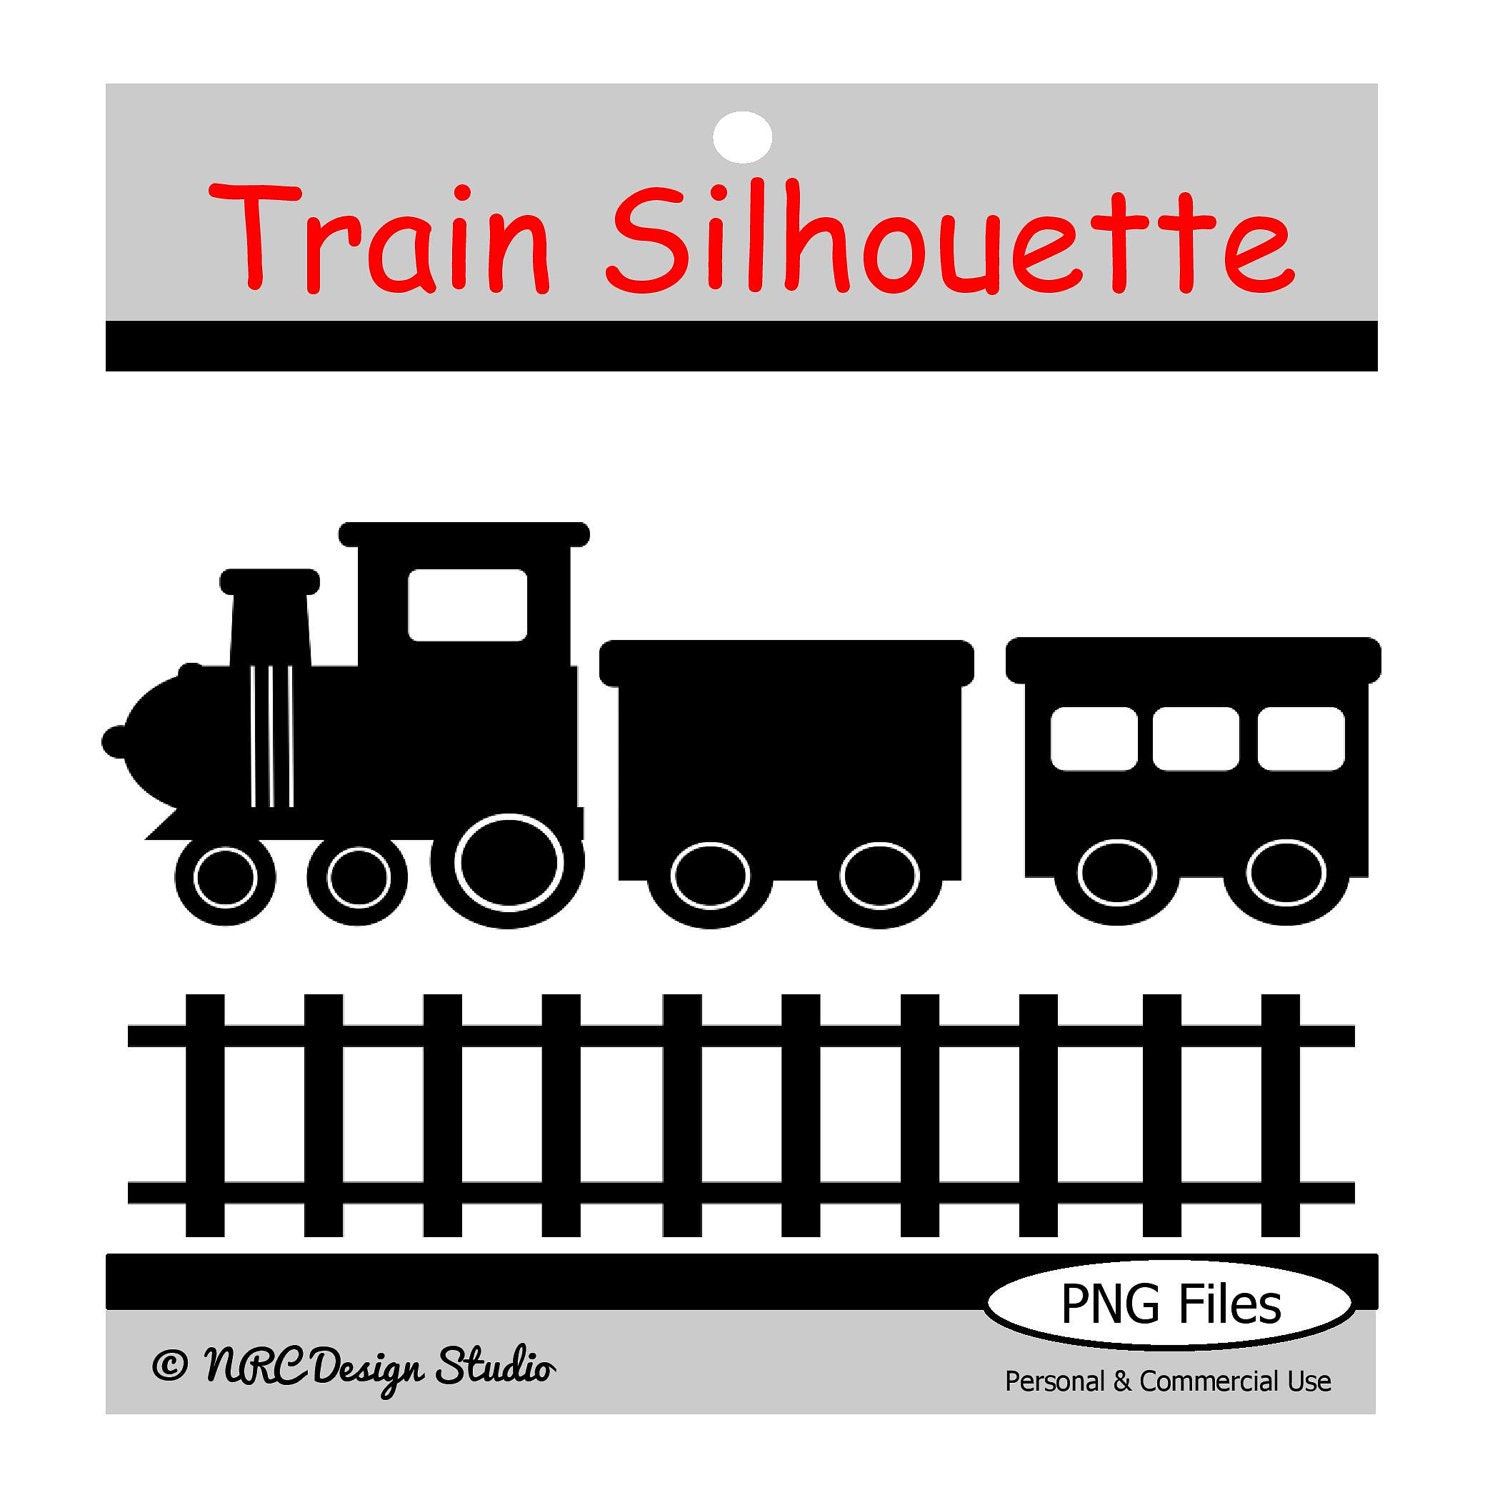 train silhouette clip art - photo #43